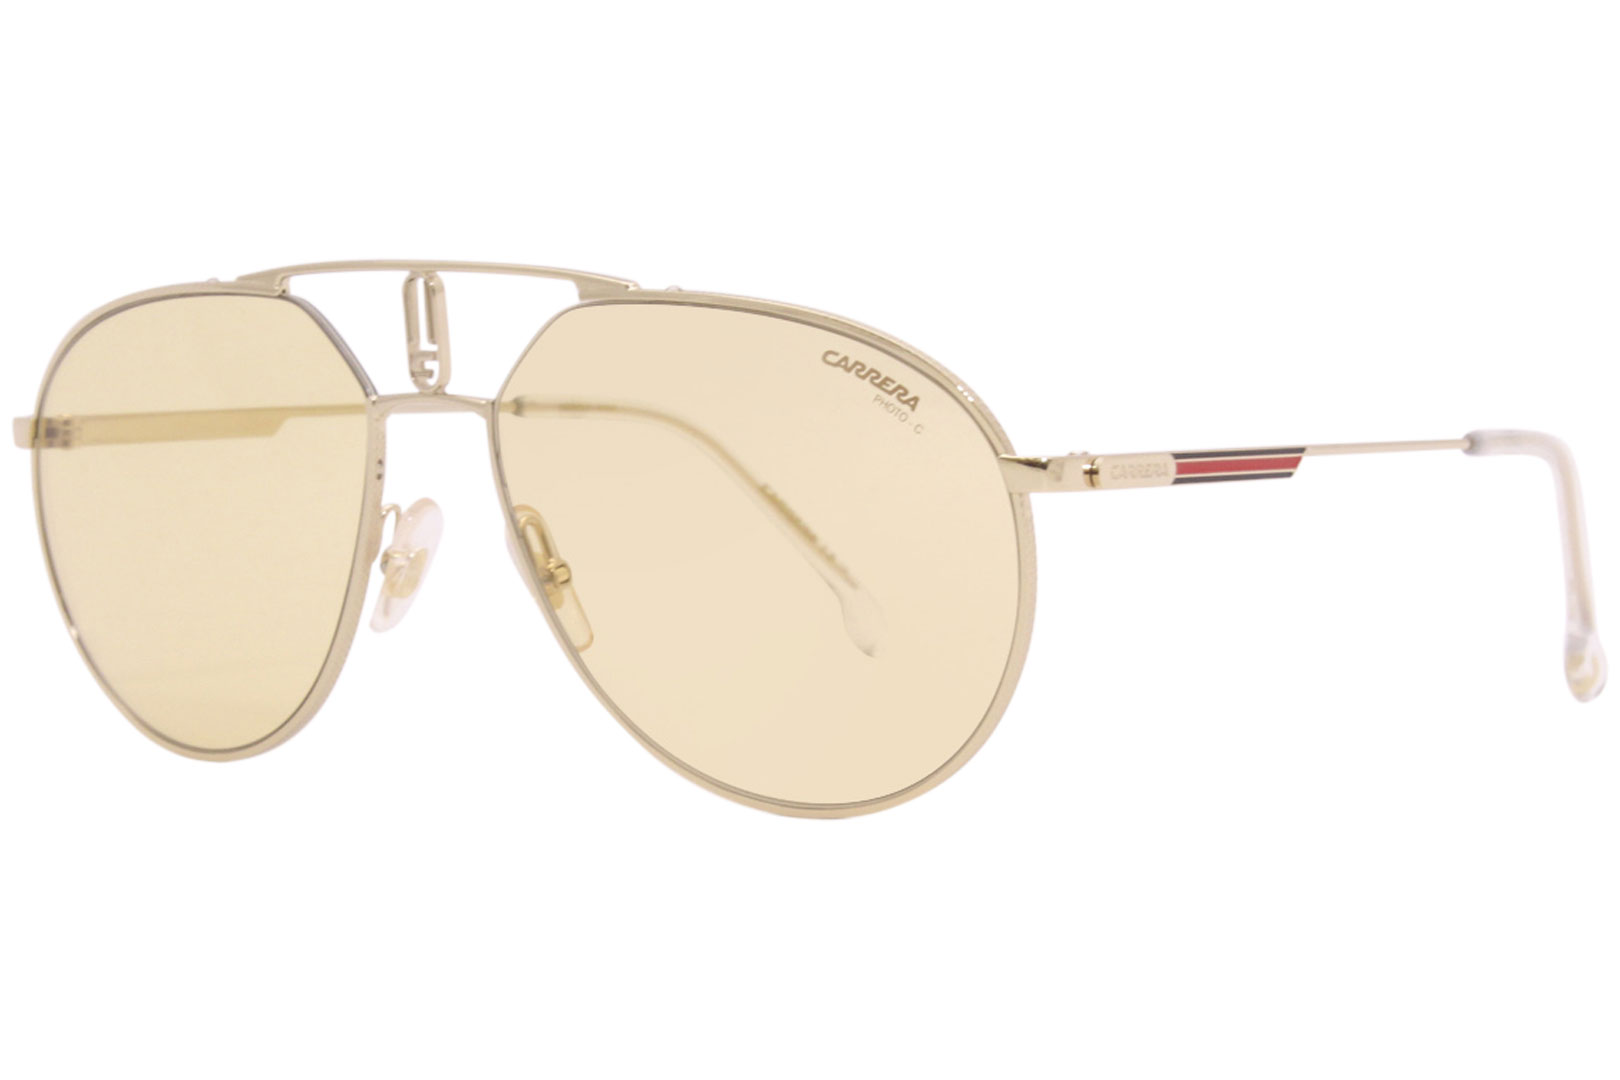 Carrera Sunglasses Men's 1025/S DYGUK Gold/Yellow Photochromic Lenses 57mm  